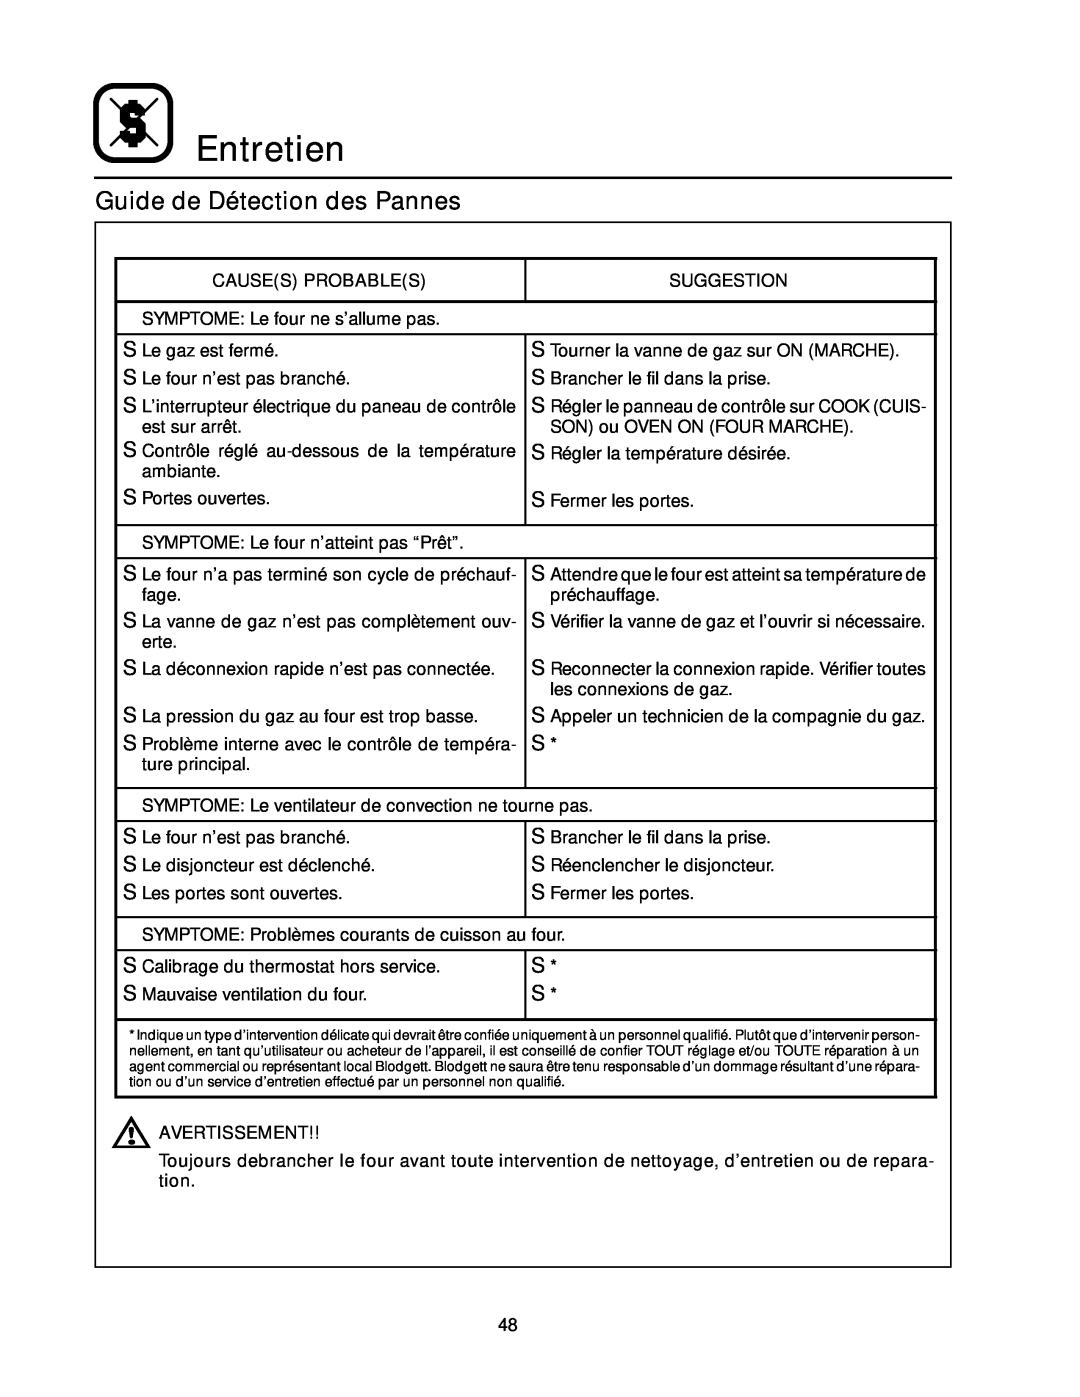 Blodgett RE Series manual Guide de Détection des Pannes, Entretien 